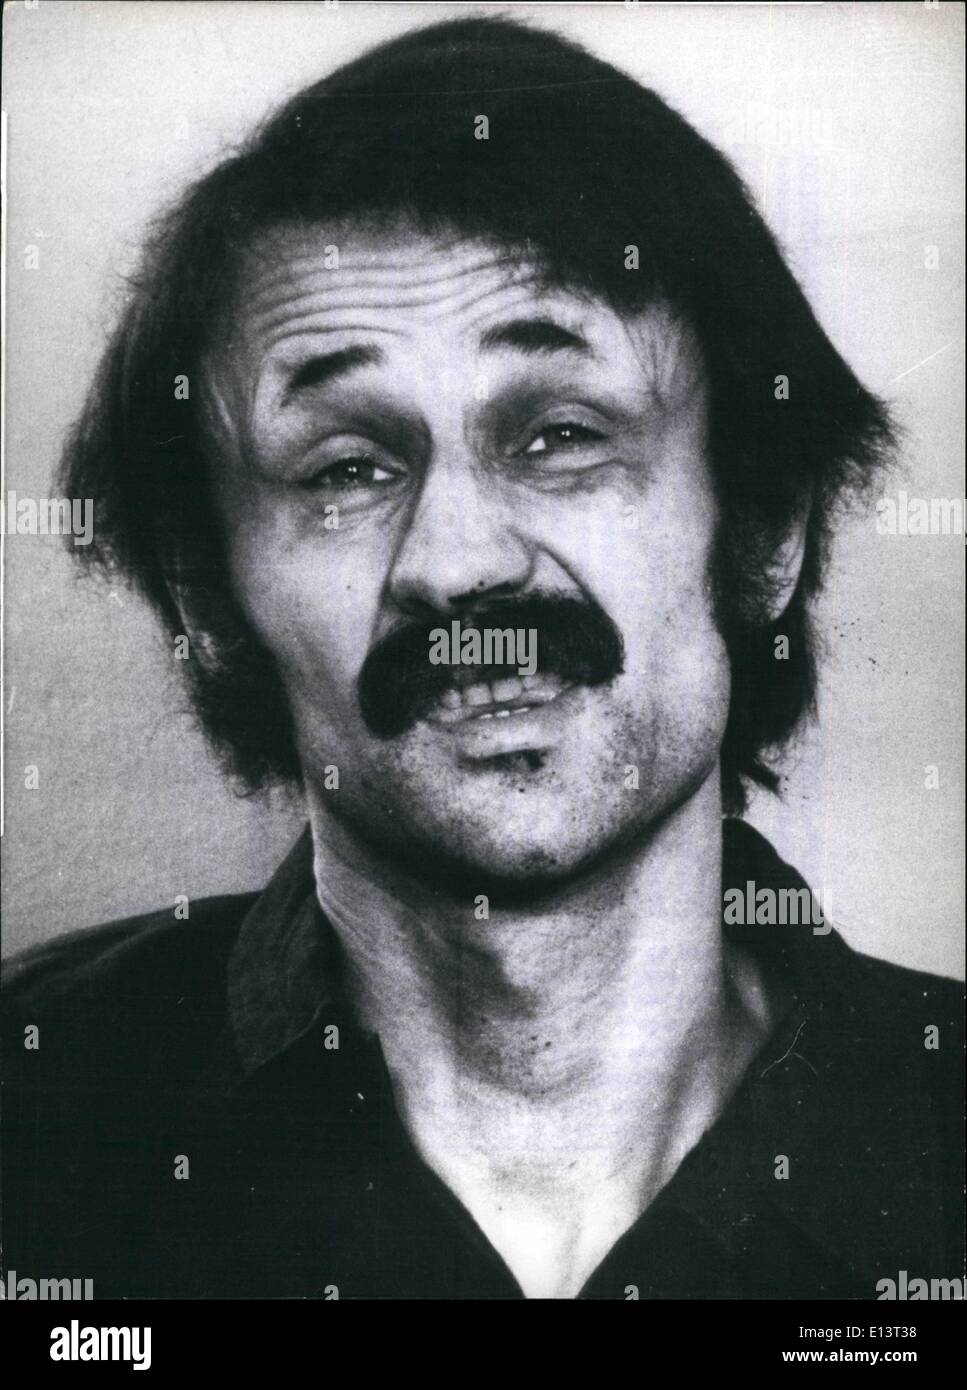 Marzo 27, 2012 - ''Raf''- miembro muere después de dos meses de huelga de hambre - : Holger Meins 33 , un miembro de la ''anarquista Raf''. Foto de stock